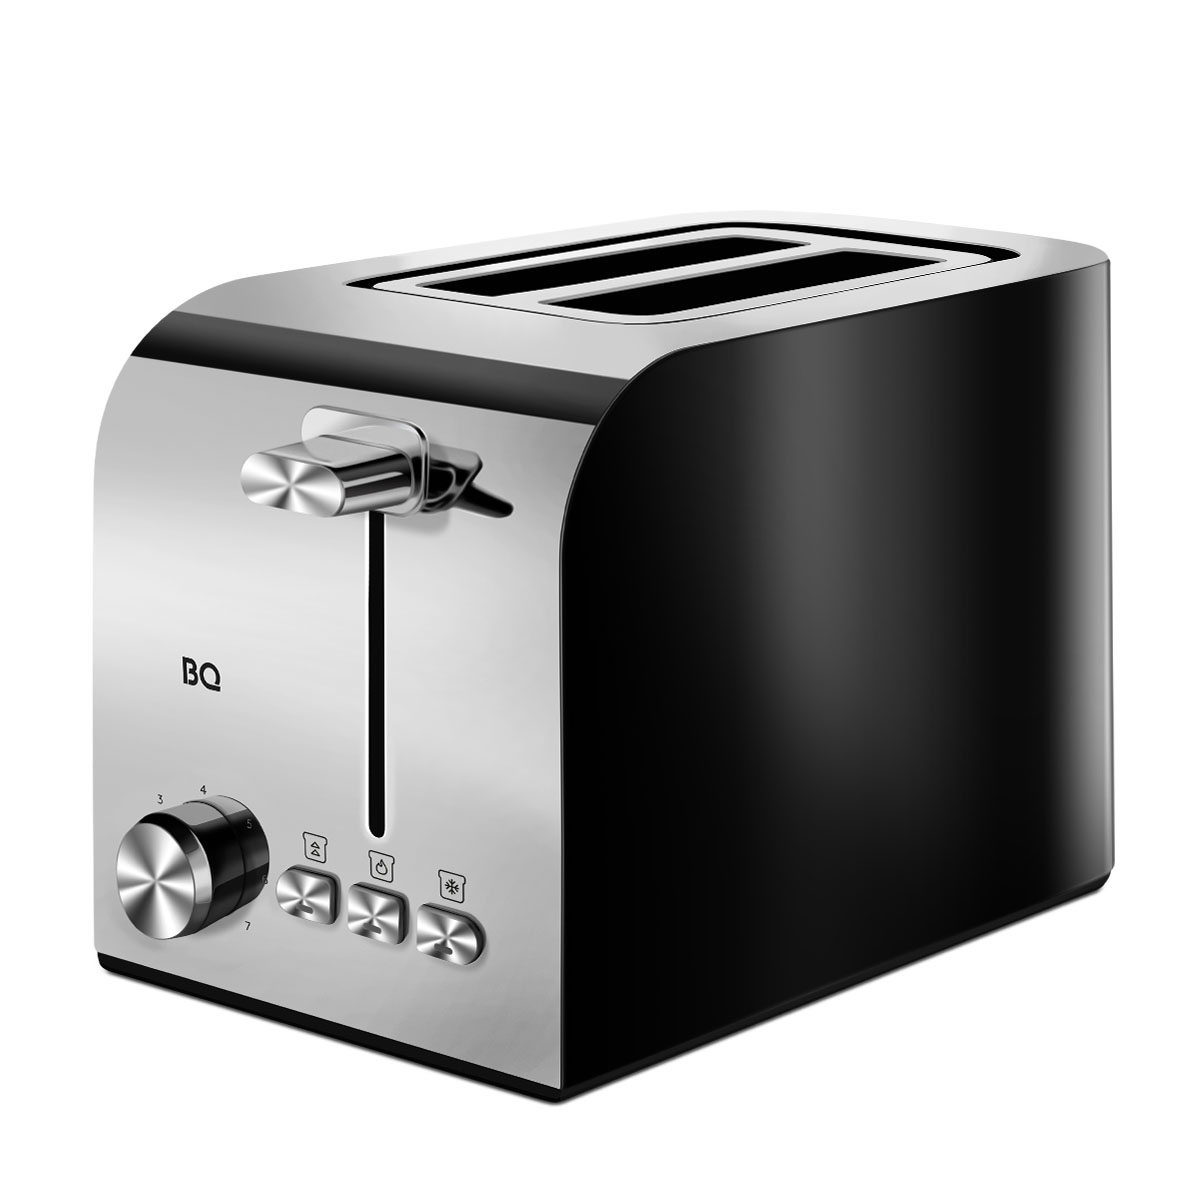 Тостер BQ T2000 серебристый, черный тостер moulinex lt160830 720 850 вт 7 режимов прожарки 2 тоста